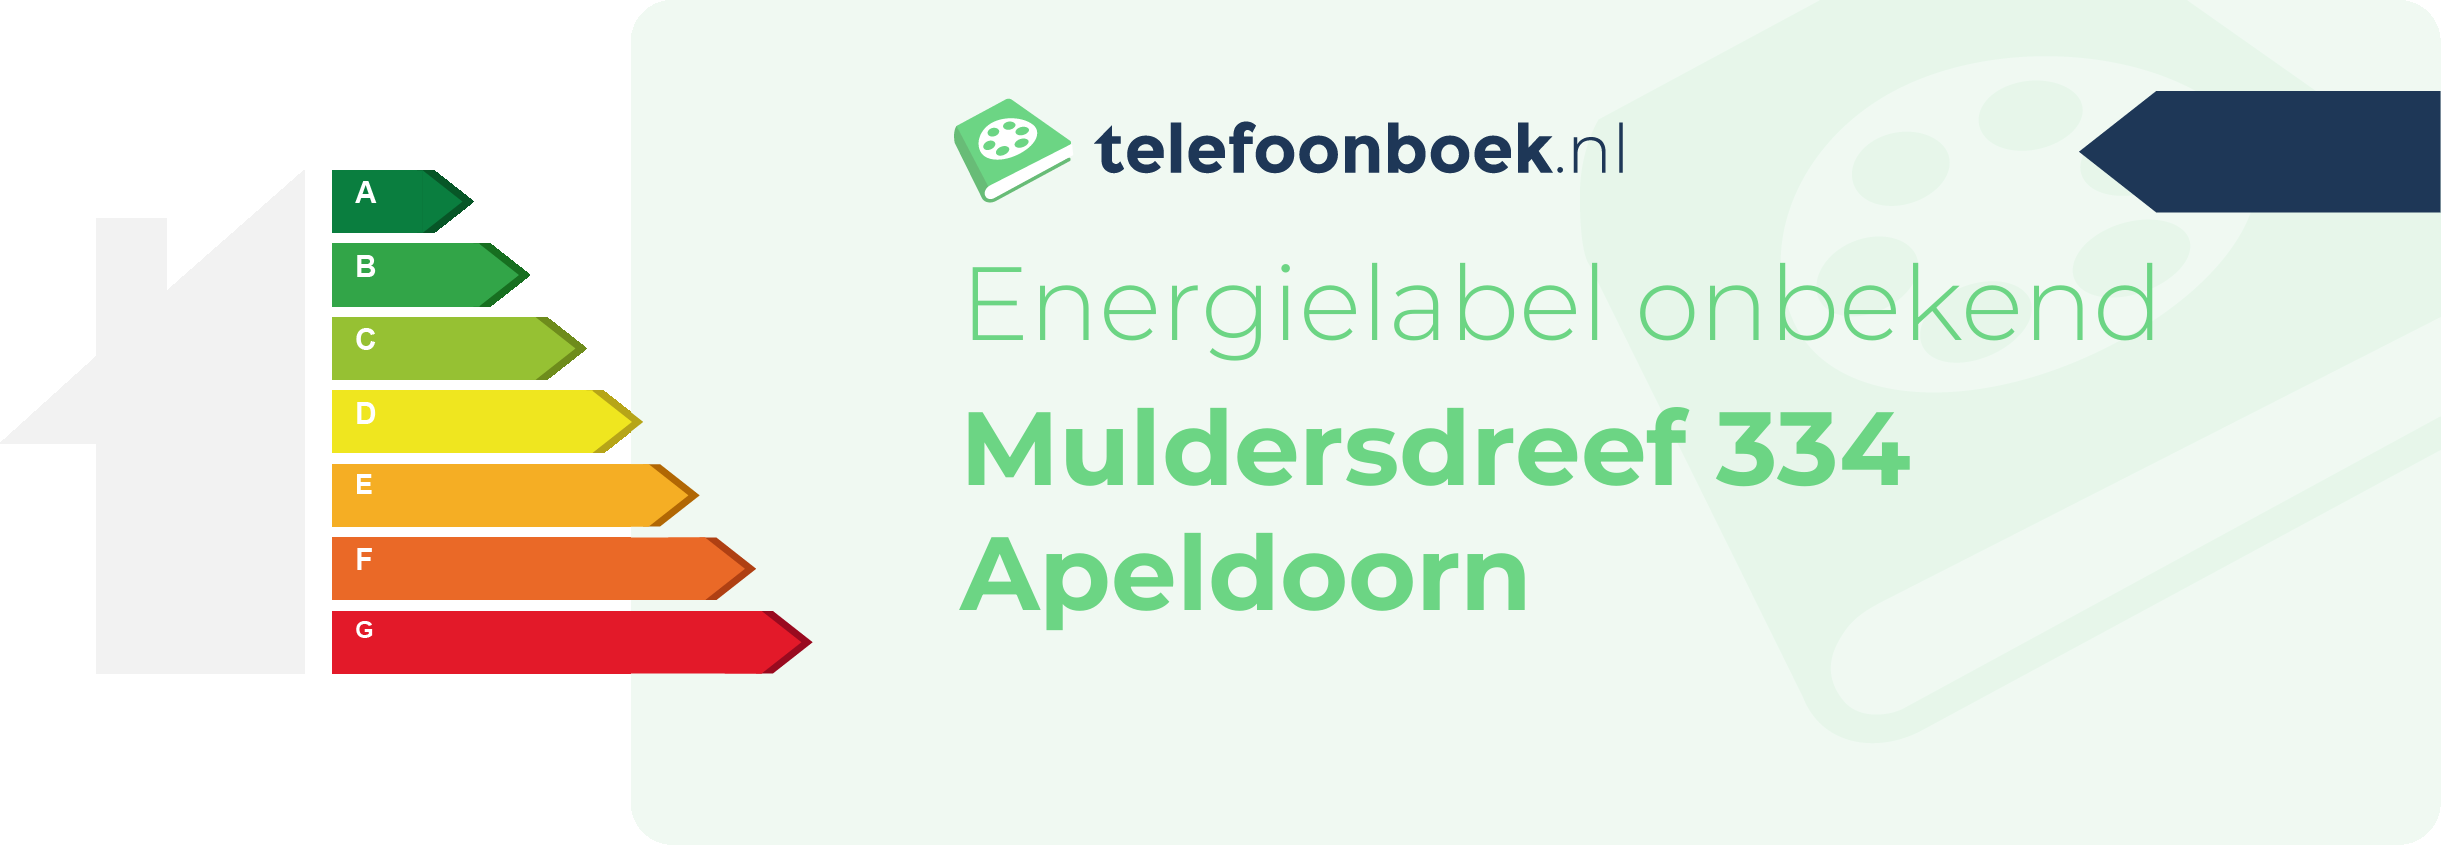 Energielabel Muldersdreef 334 Apeldoorn